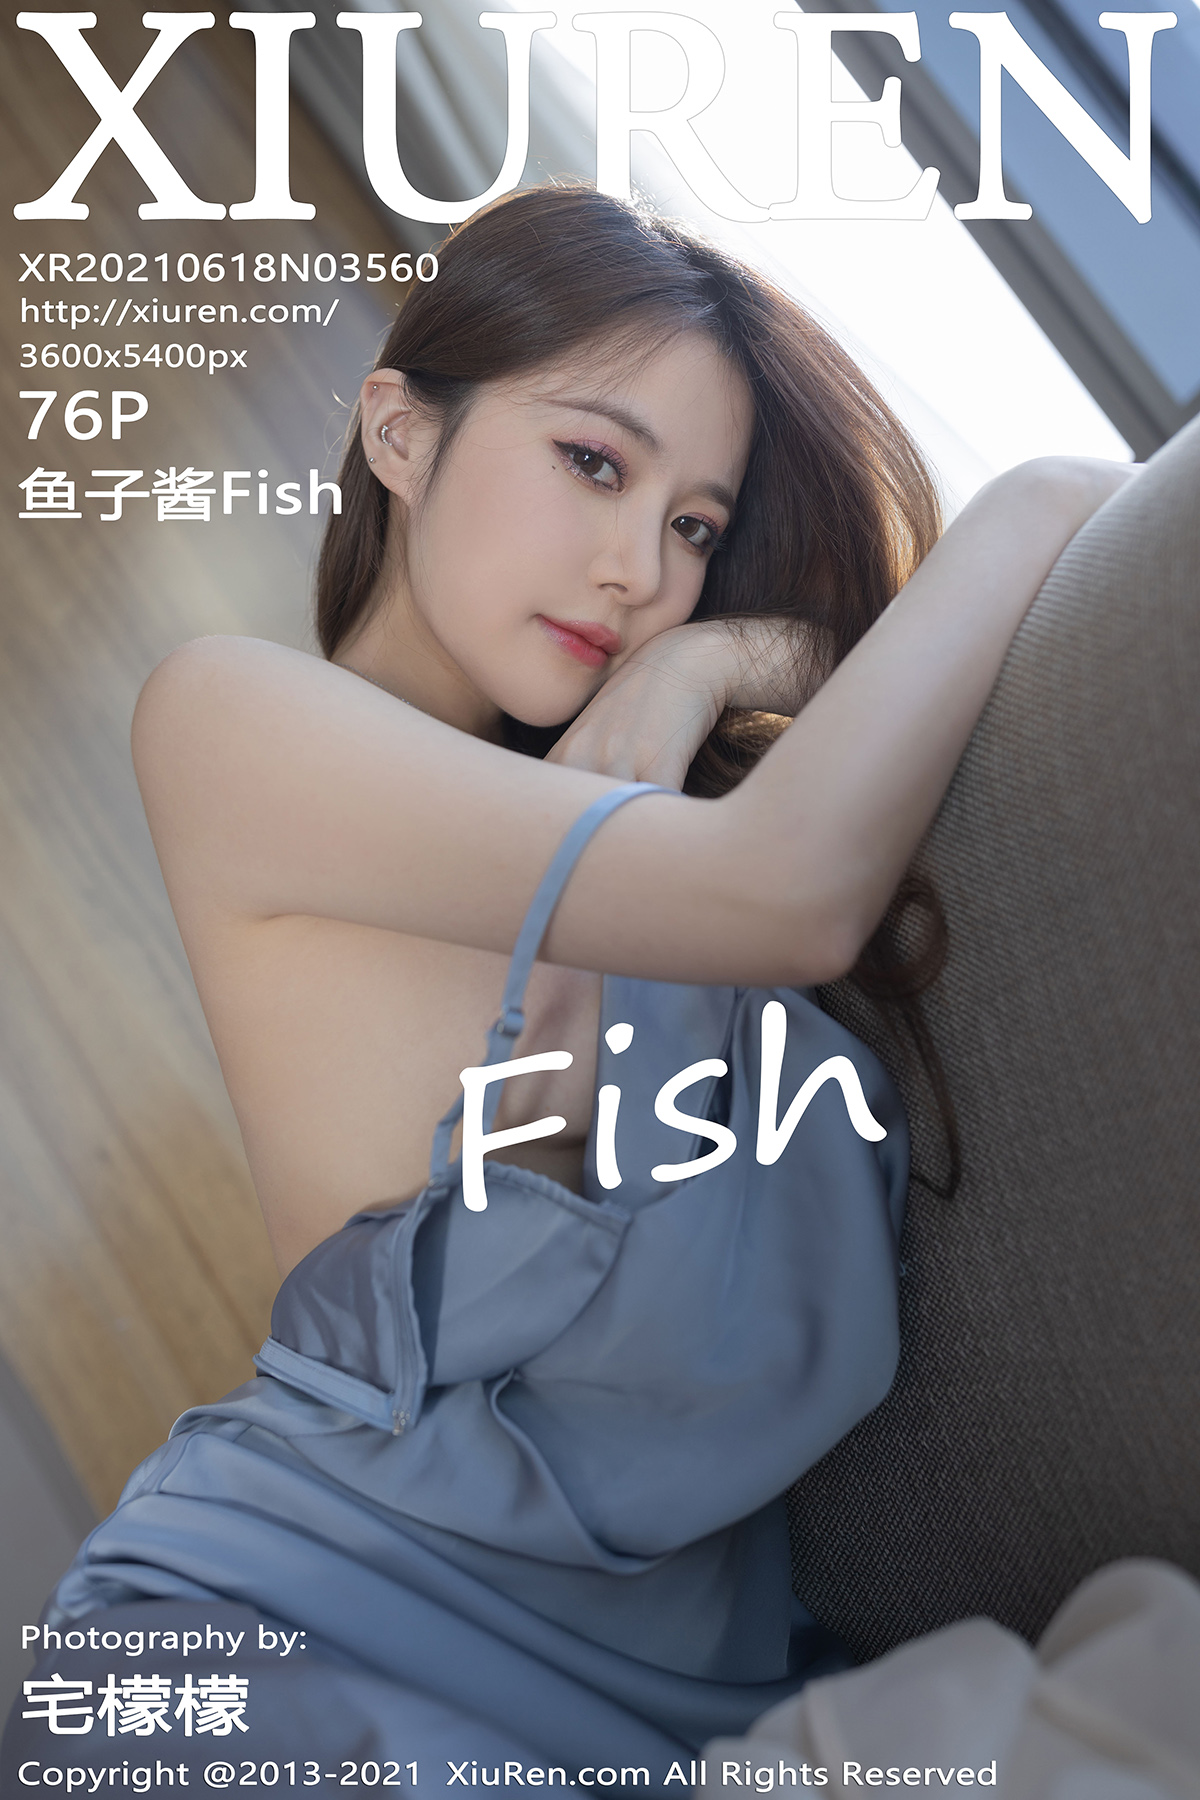 秀人 [XIUREN] 2021.06.18 鱼子酱Fish